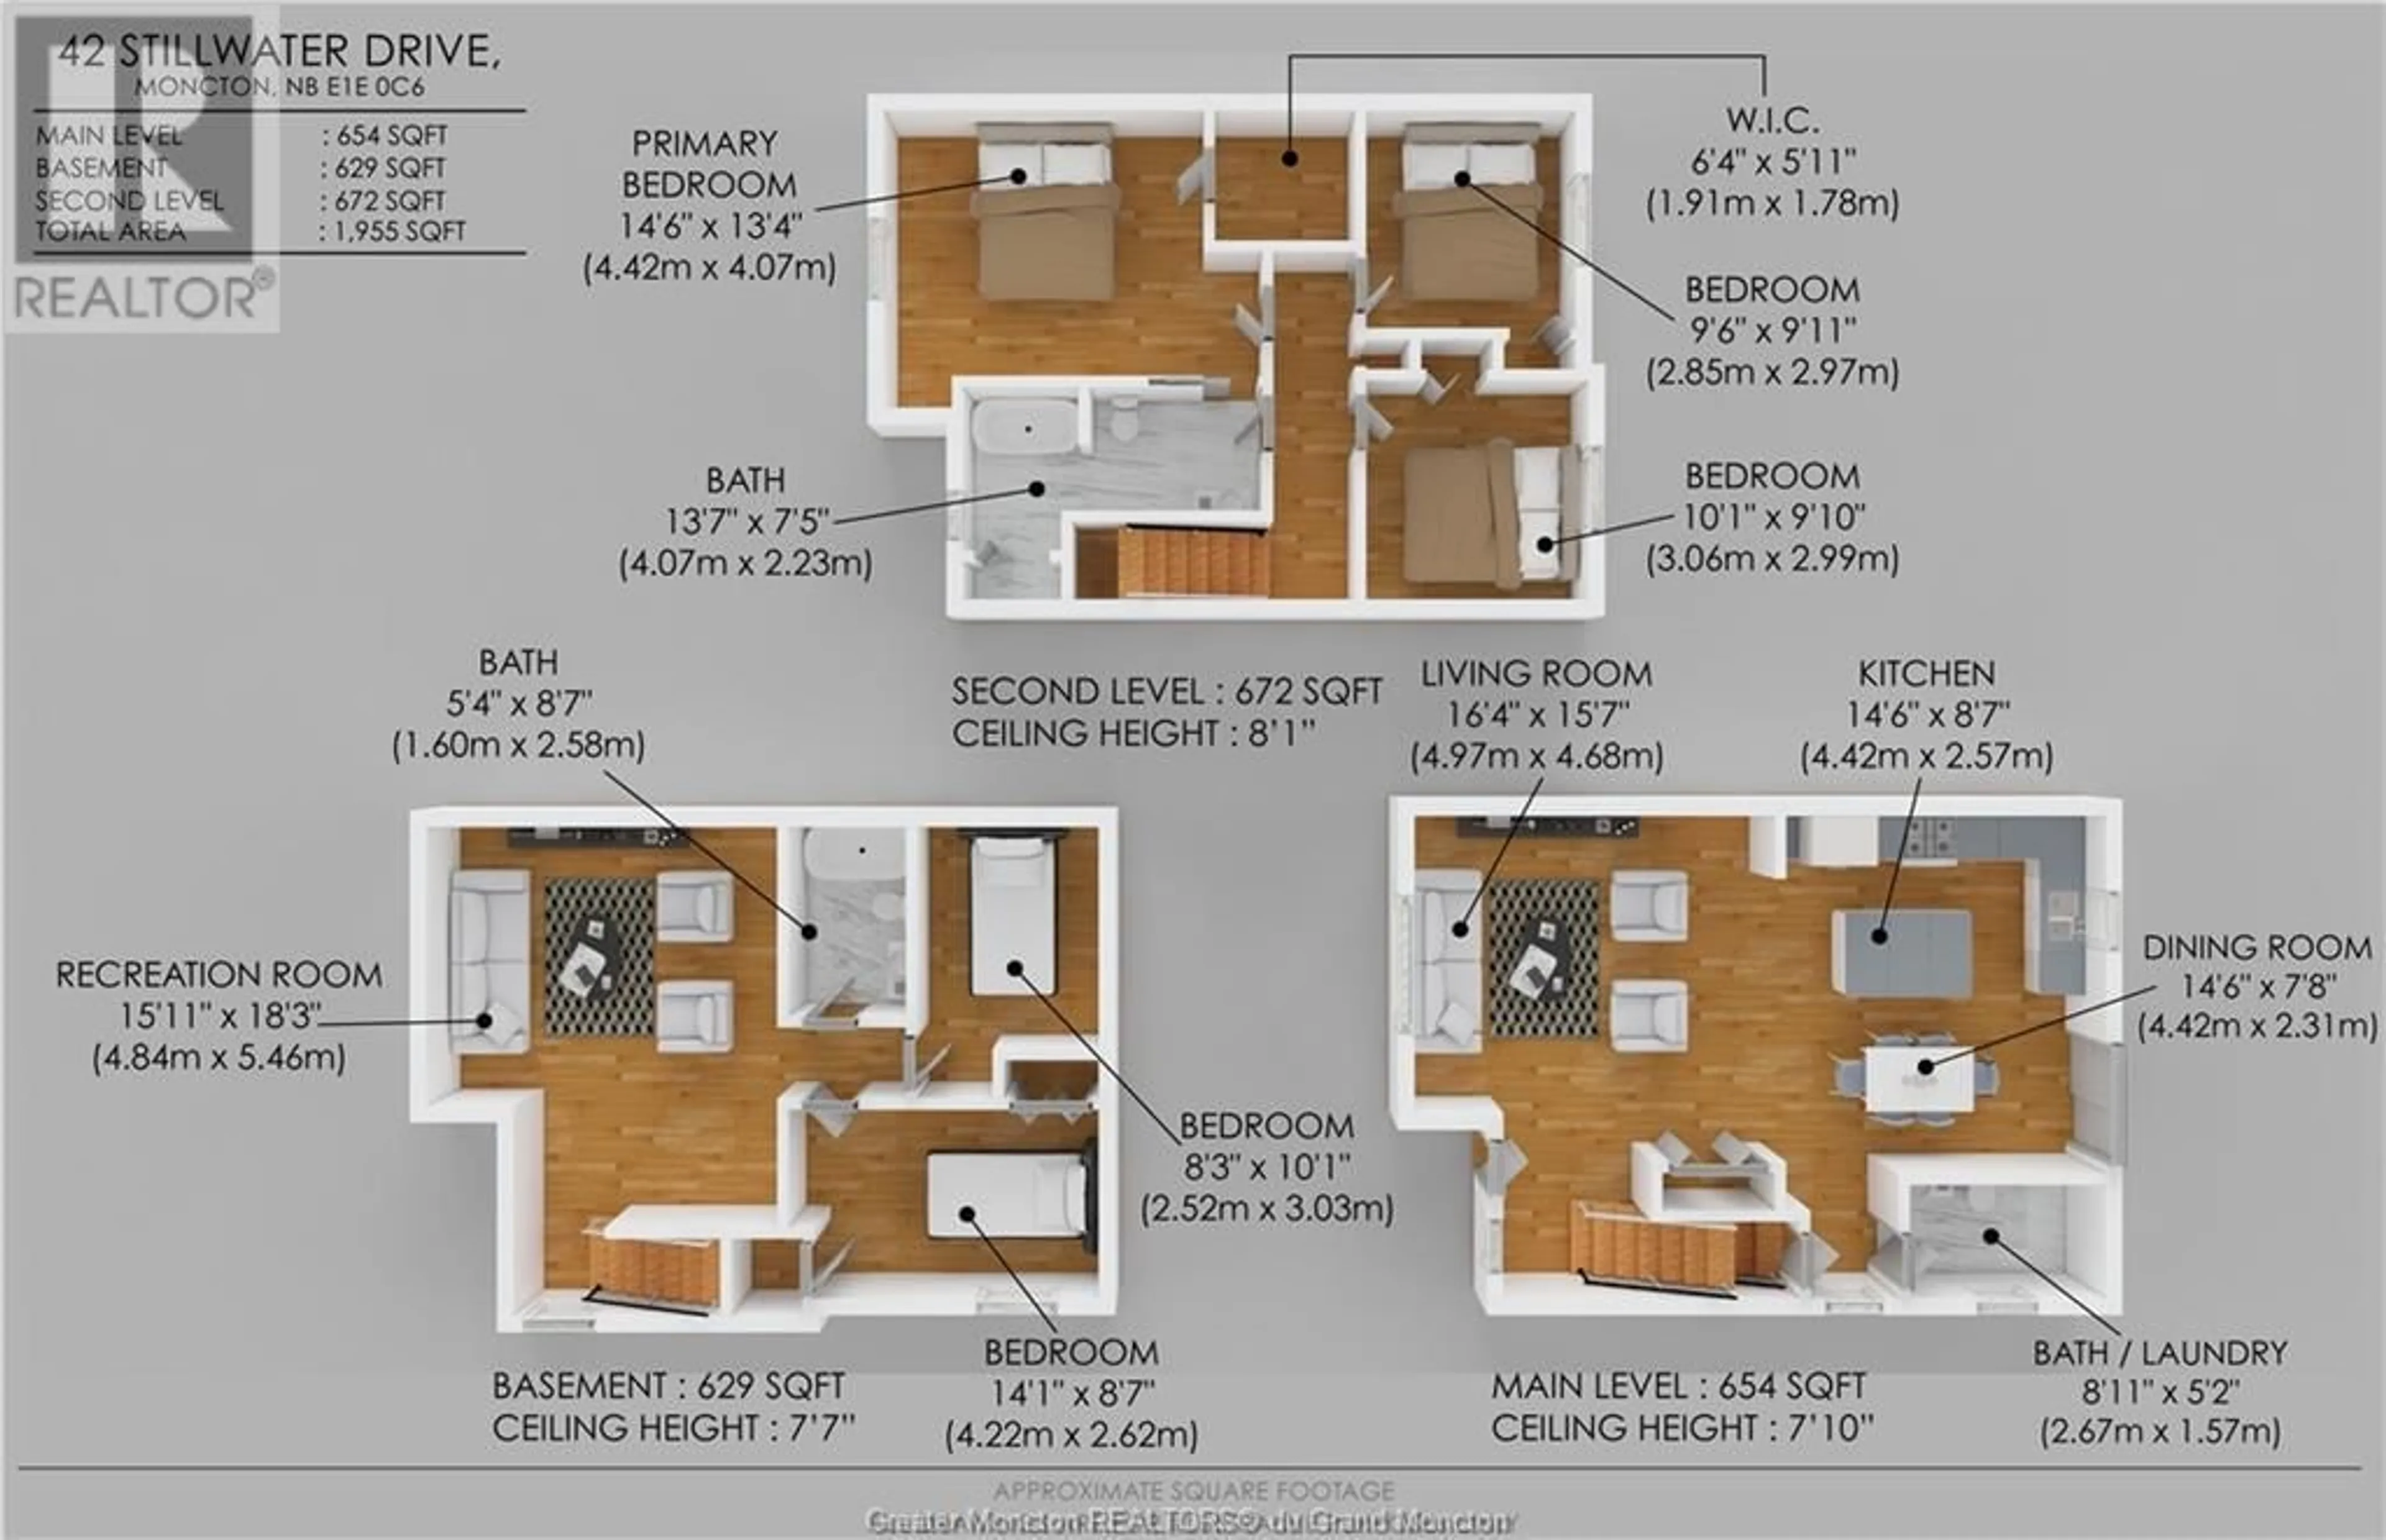 Floor plan for 42 Stillwater DR, Moncton New Brunswick E1E0C6